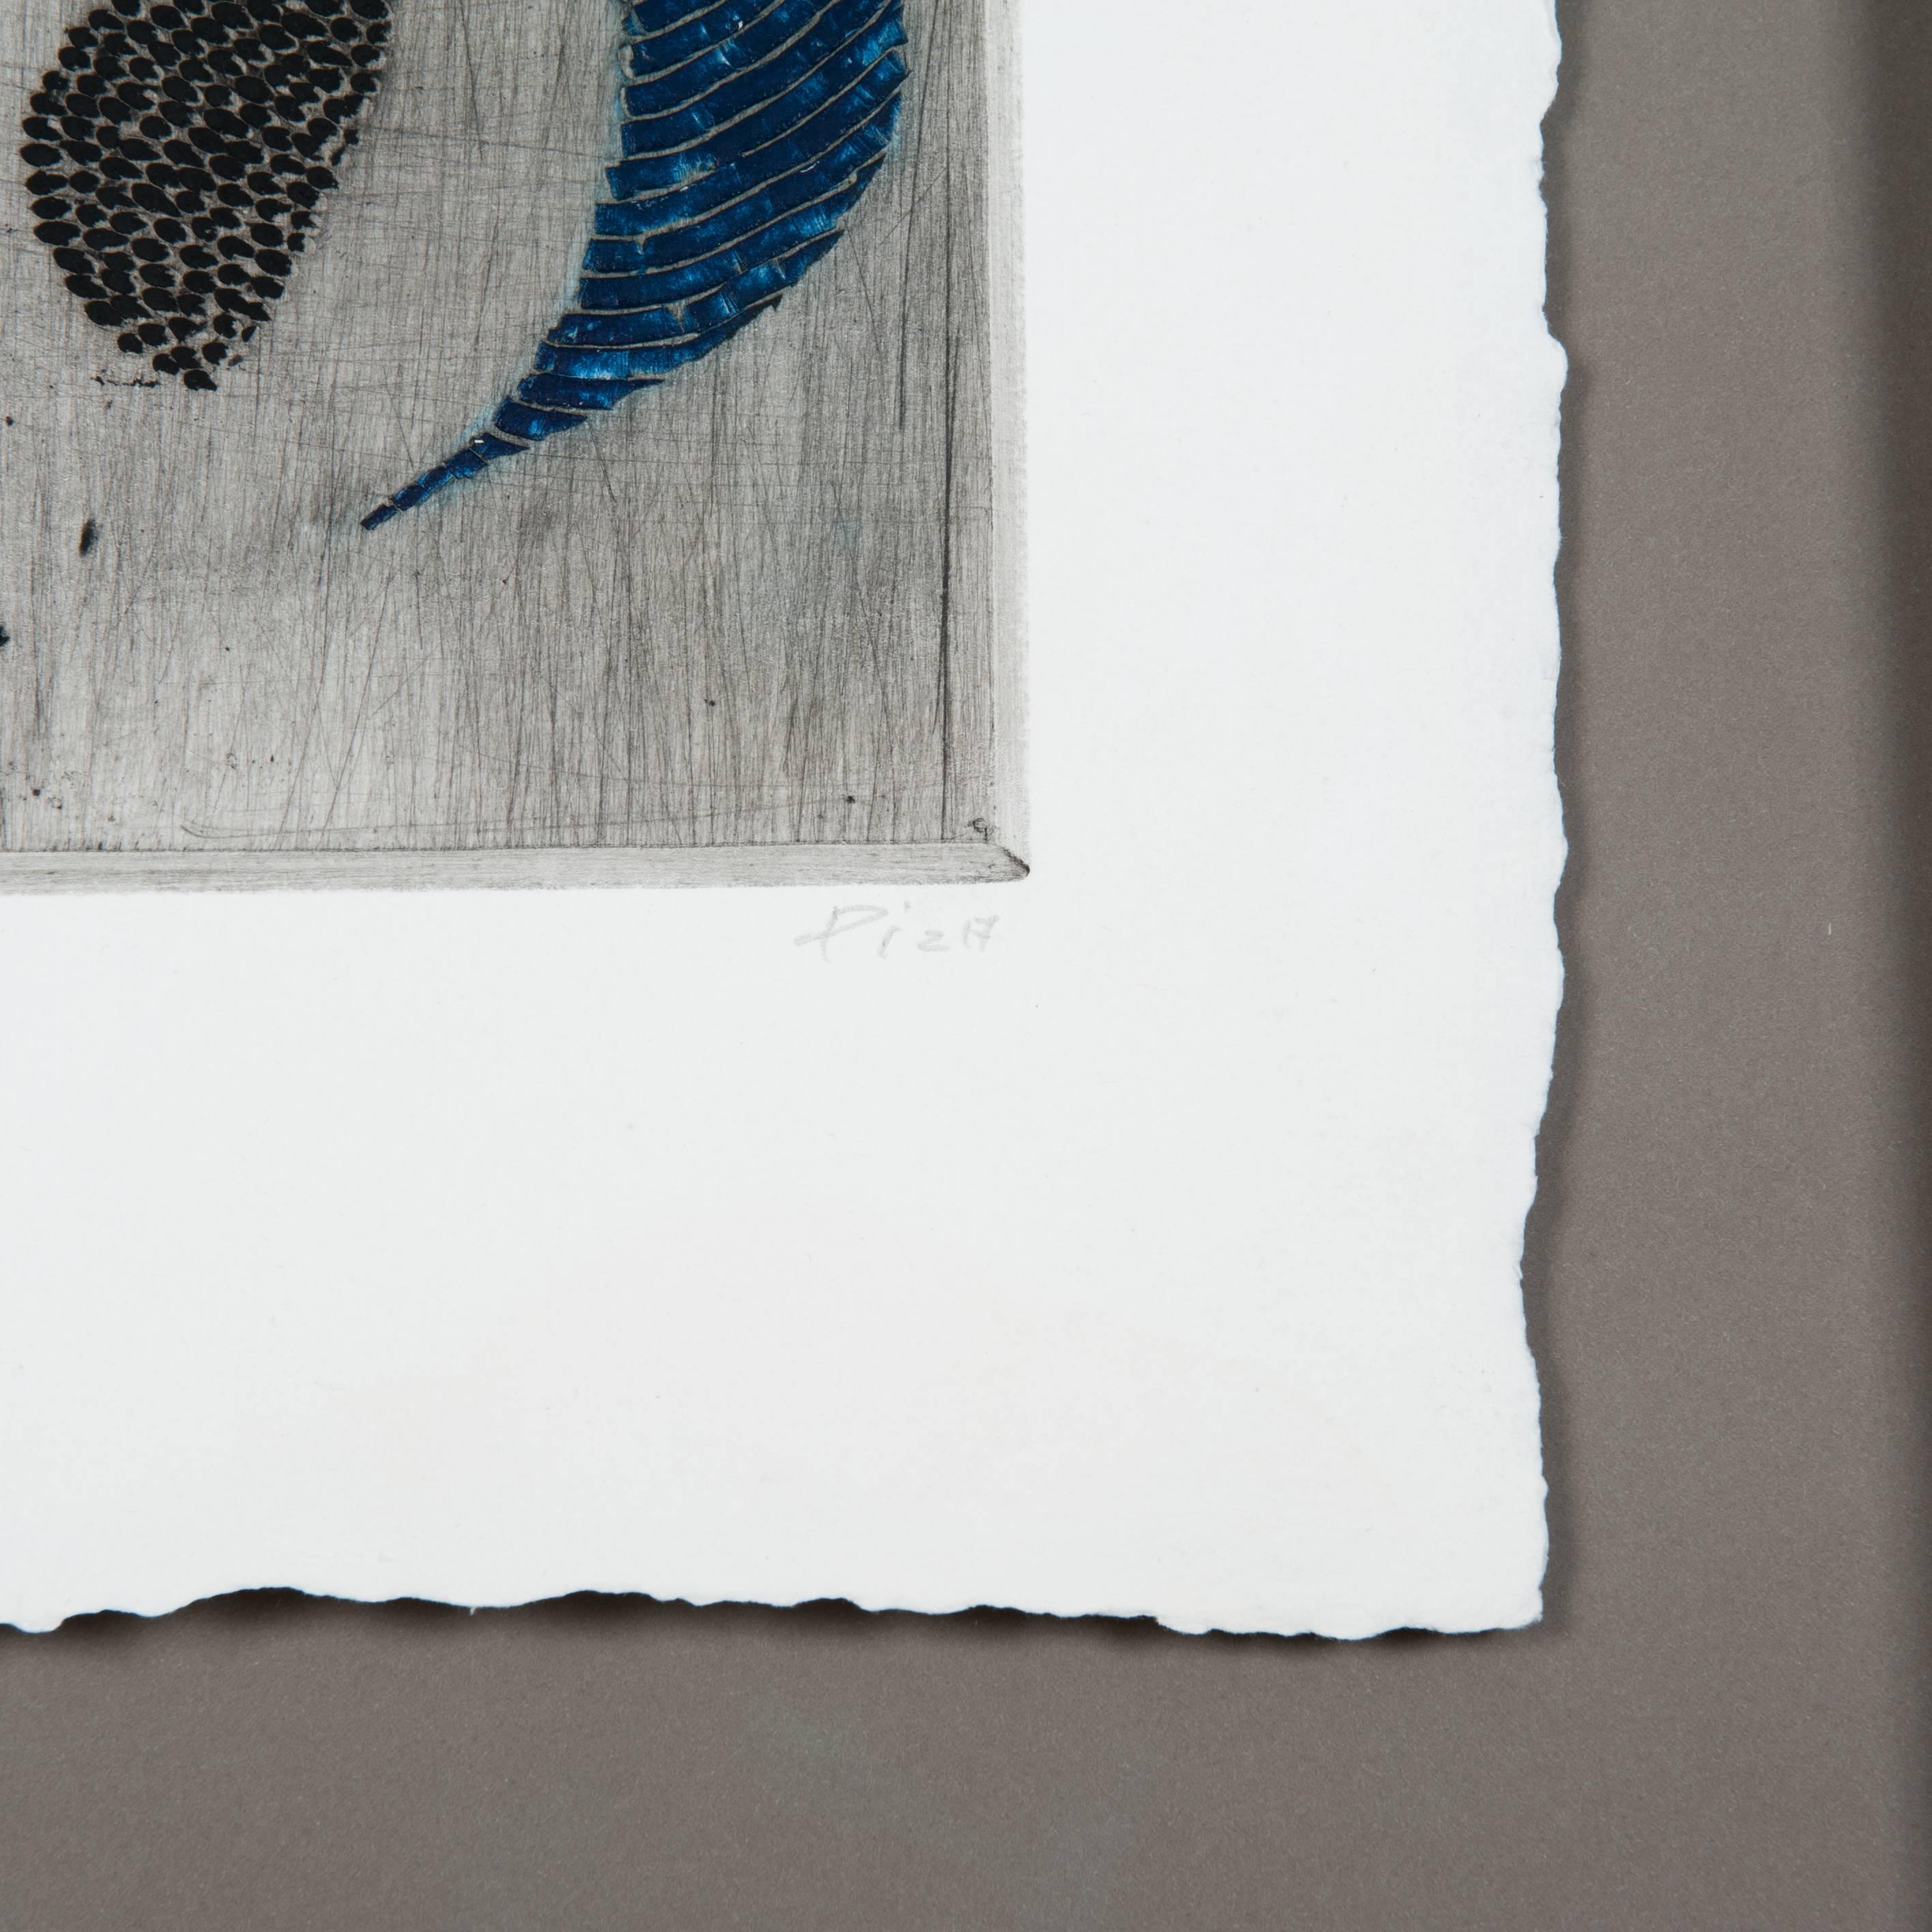 Abstrakte, geometrische Grafik in blauer, roter und schwarzer Tinte auf Papier von Arthur Luiz Piza.
Sein Stil verbindet zeichnerische und grafische Techniken.
Handgefertigter Holzrahmen schwarz patiniert mit weiß-goldenem Dekor, grau-mattes